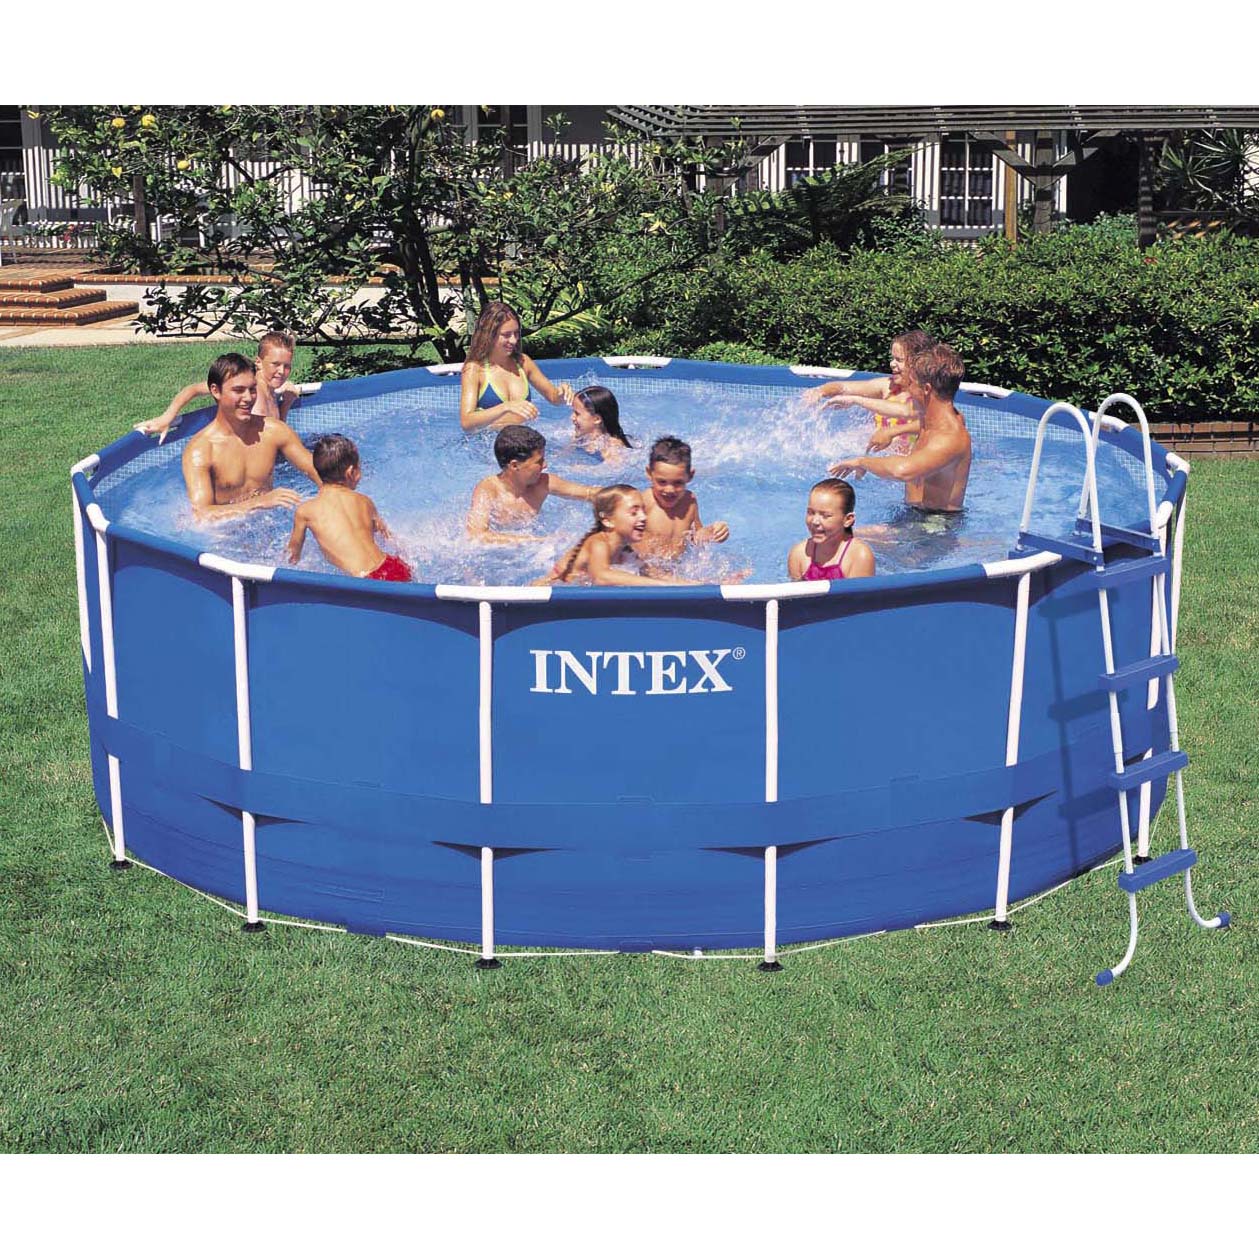 Intex Metal Frame Pool Set, 15-Feet by 48-Inch (Older Model) - image 3 of 7